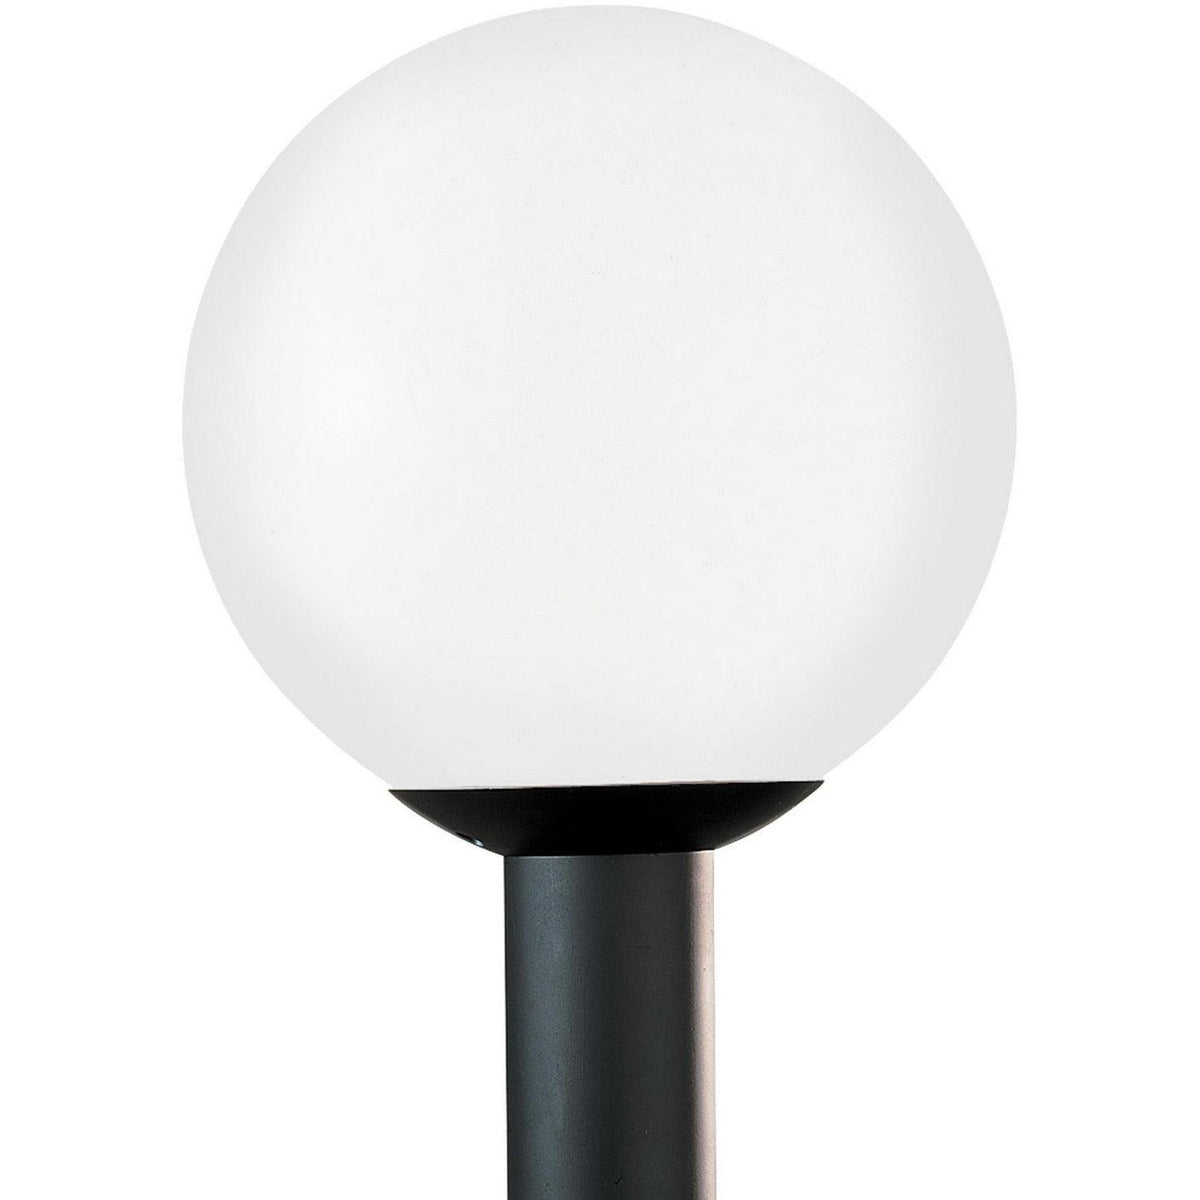 Generation Lighting - Outdoor Globe Outdoor Post Lantern - 8254EN3-68 | Montreal Lighting & Hardware